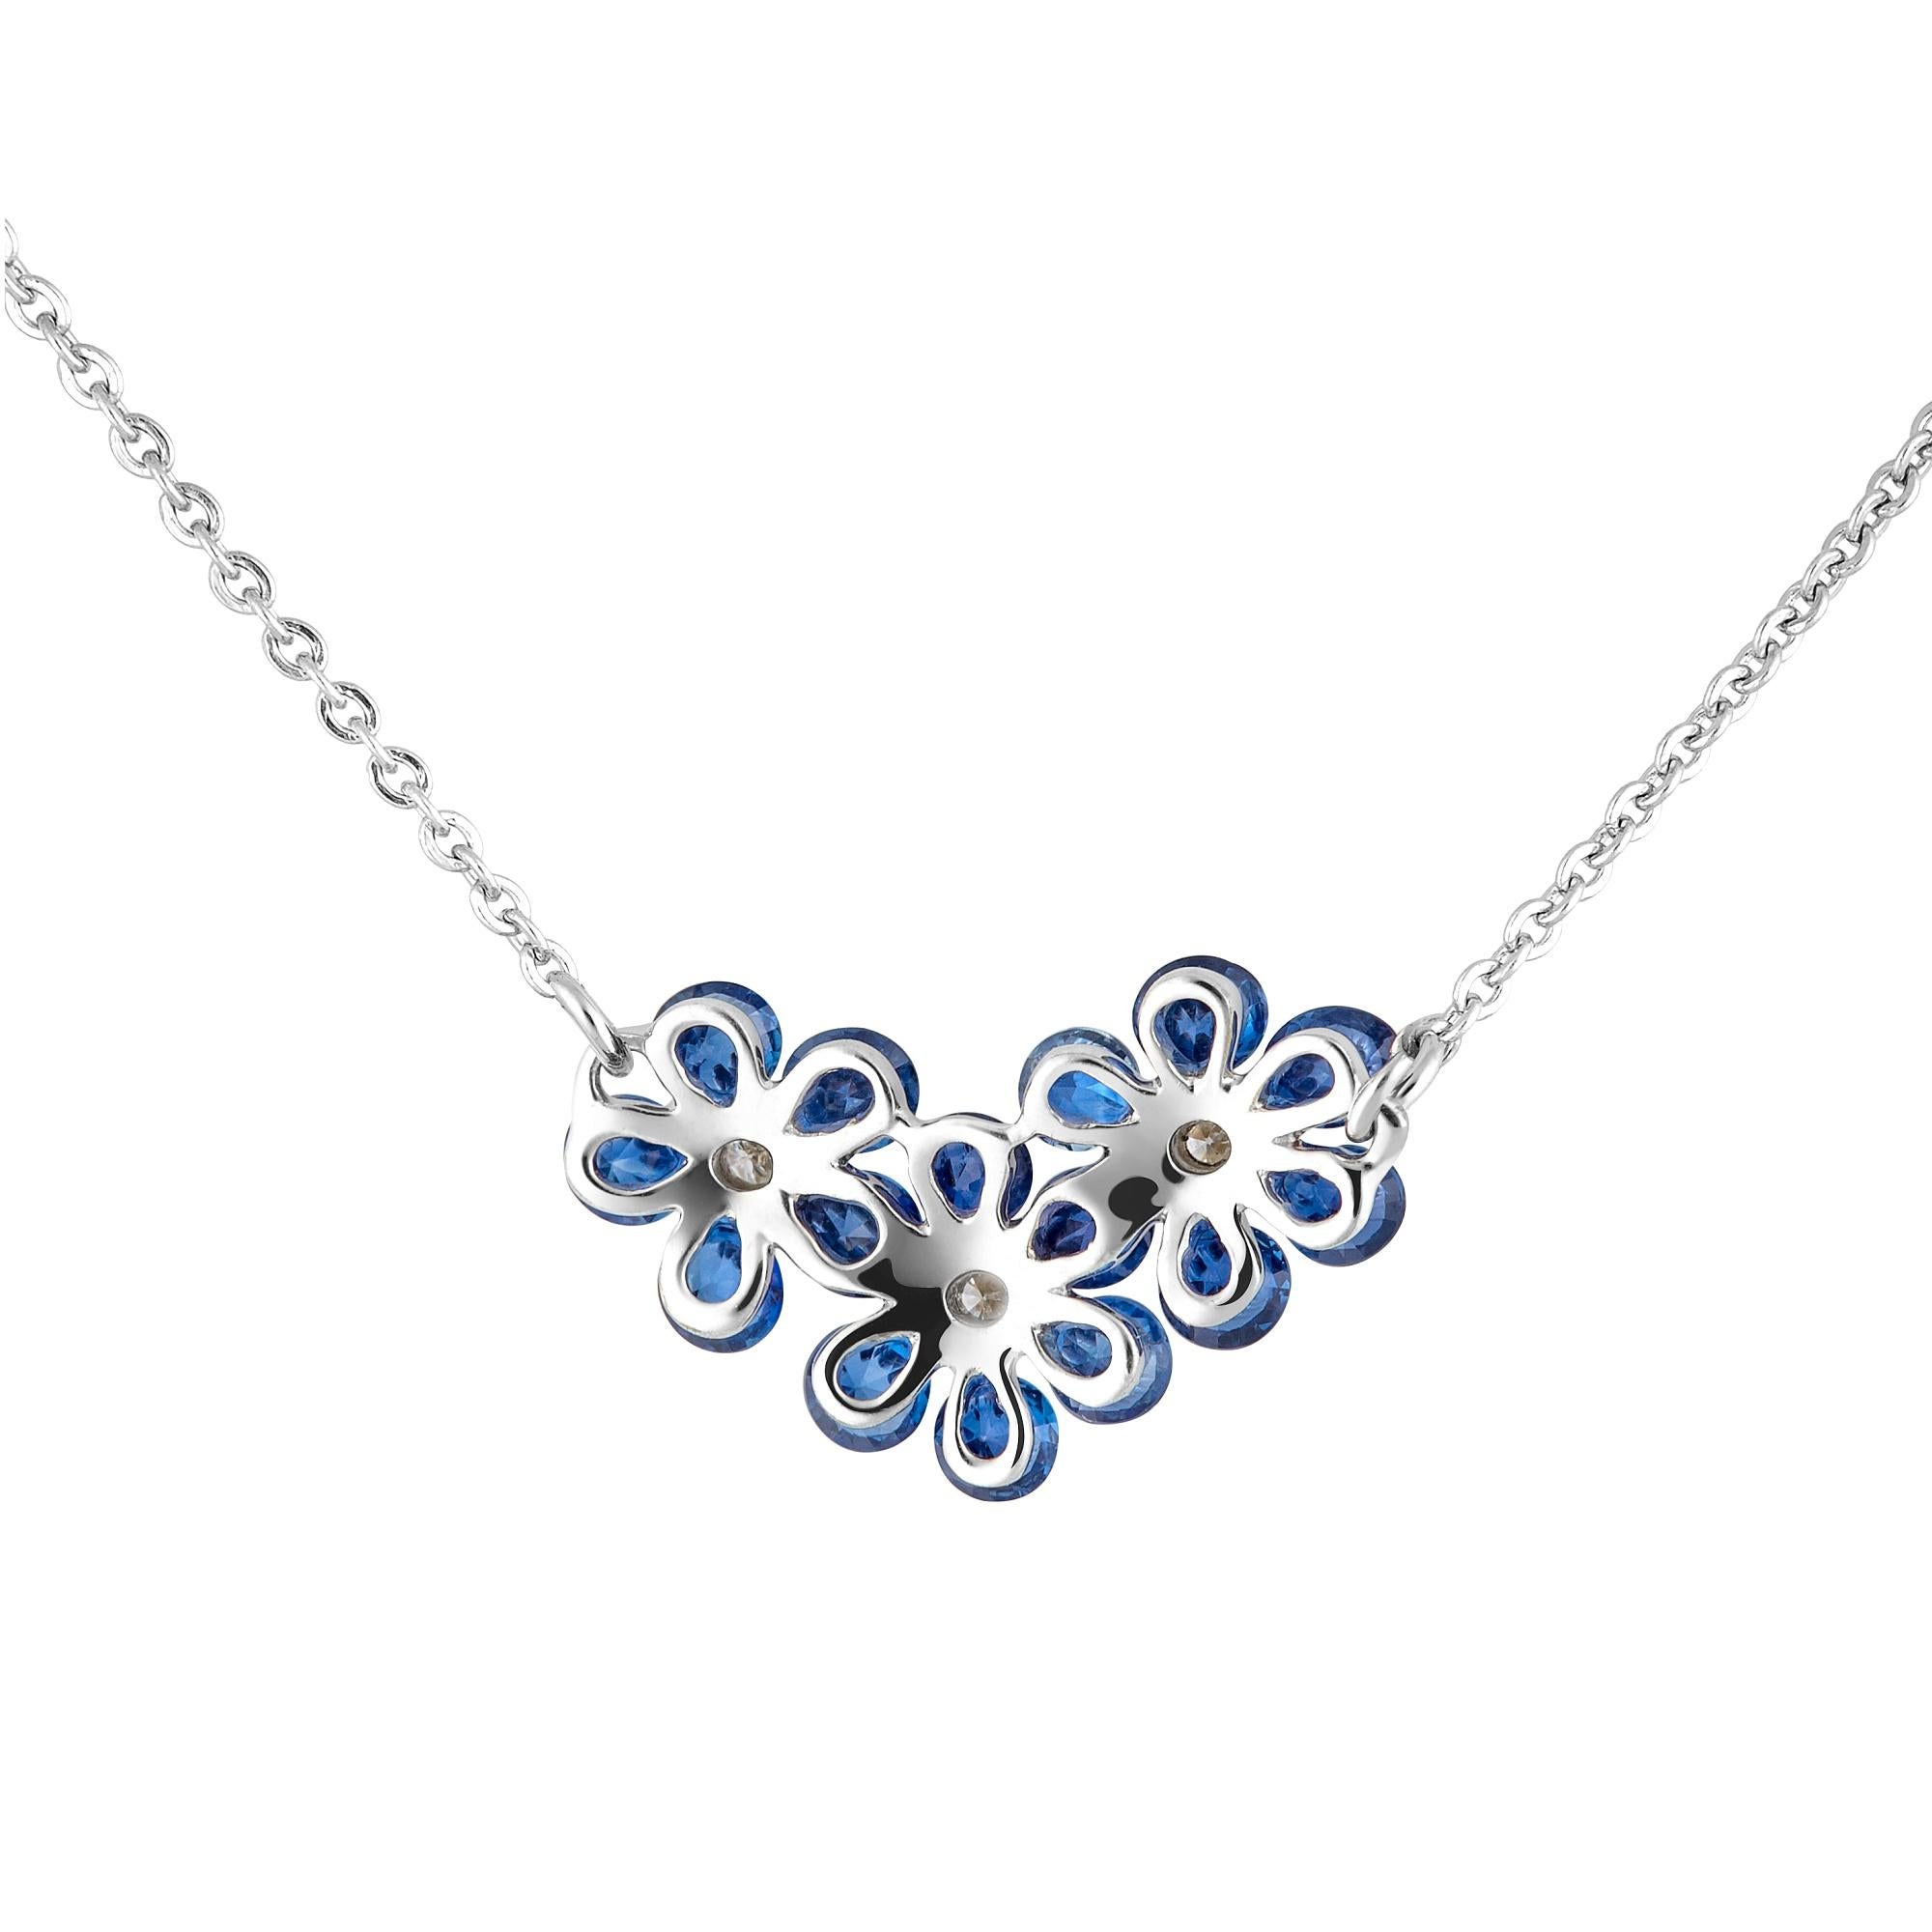 Les saphirs bleus taillés en diamant sont montés avec soin dans un délicat motif de fleur, en faisant appel à une technologie innovante.  

Brevetée au niveau international, la technologie Waltzing Brilliance est une invention joaillière innovante